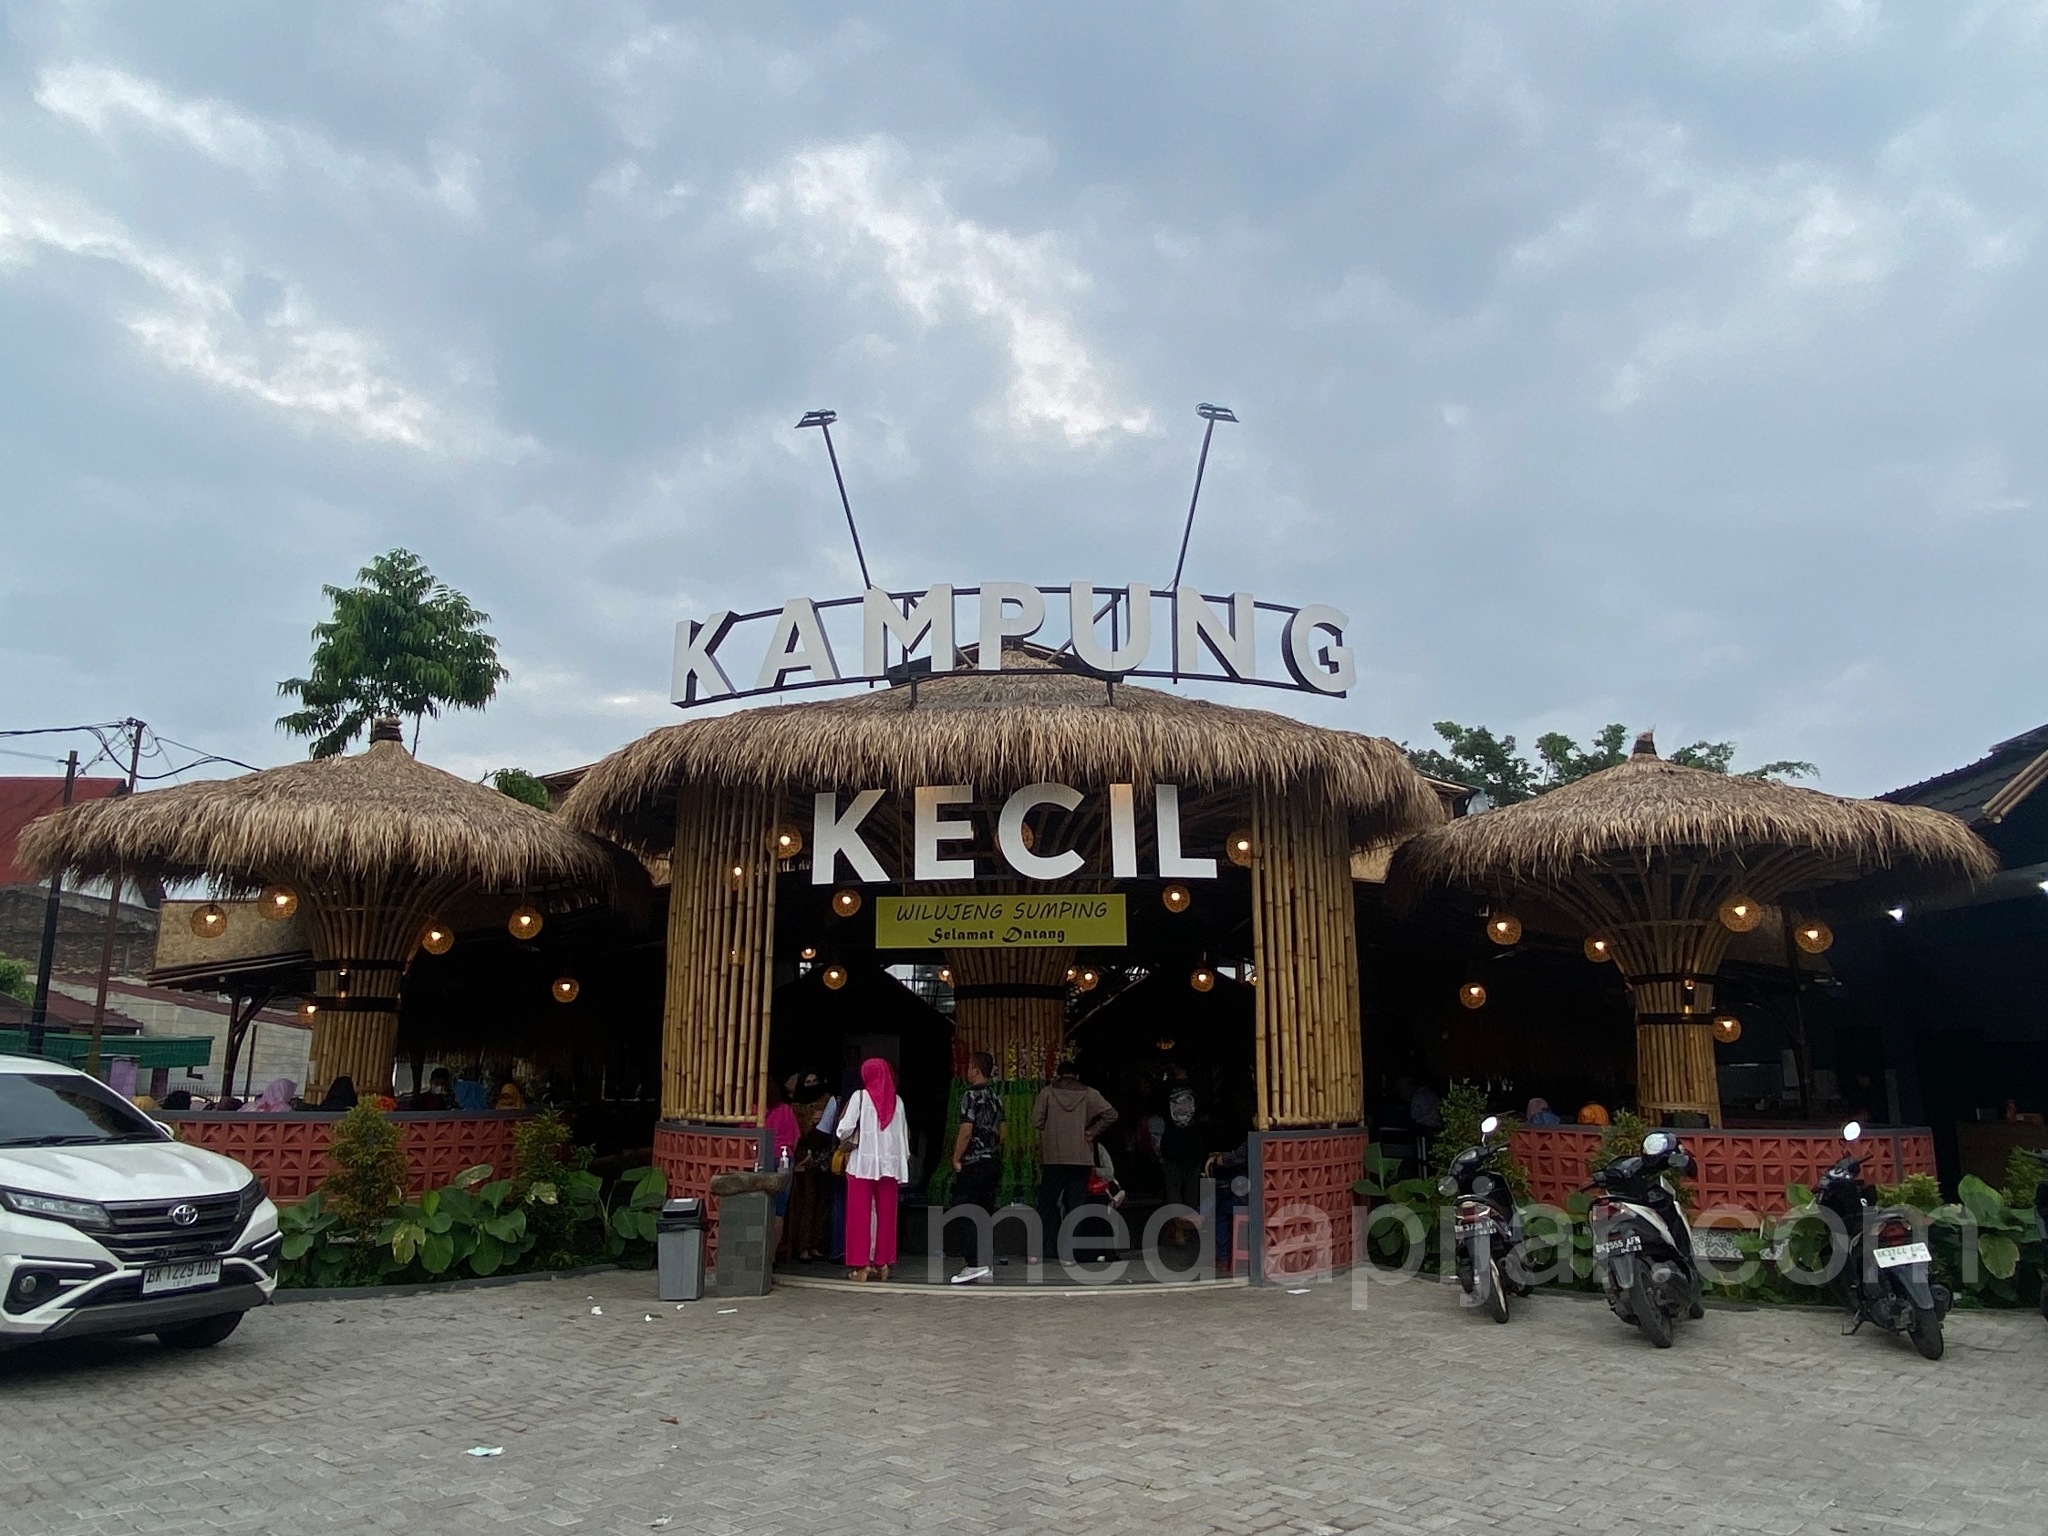 Kampung Kecil, Restoran dengan Konsep Perkampungan - www.mediapijar.com